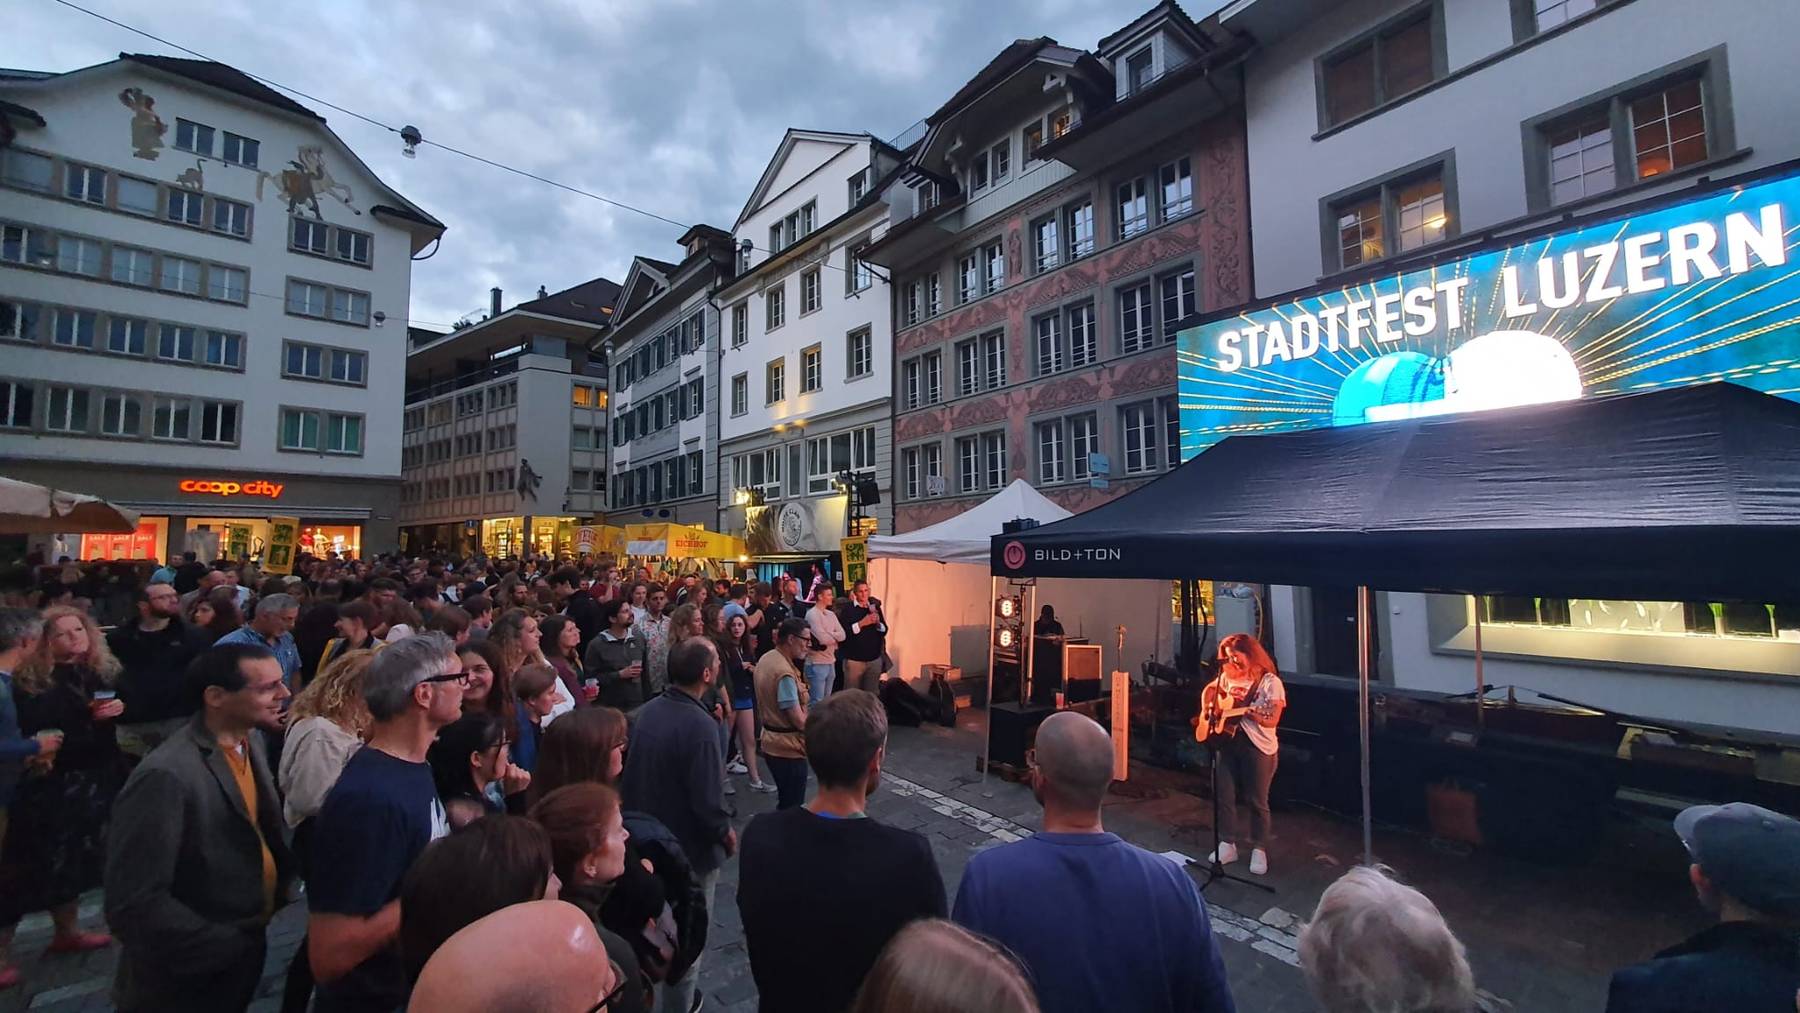 Stadtfest Luzern, Freitag 24.06.22